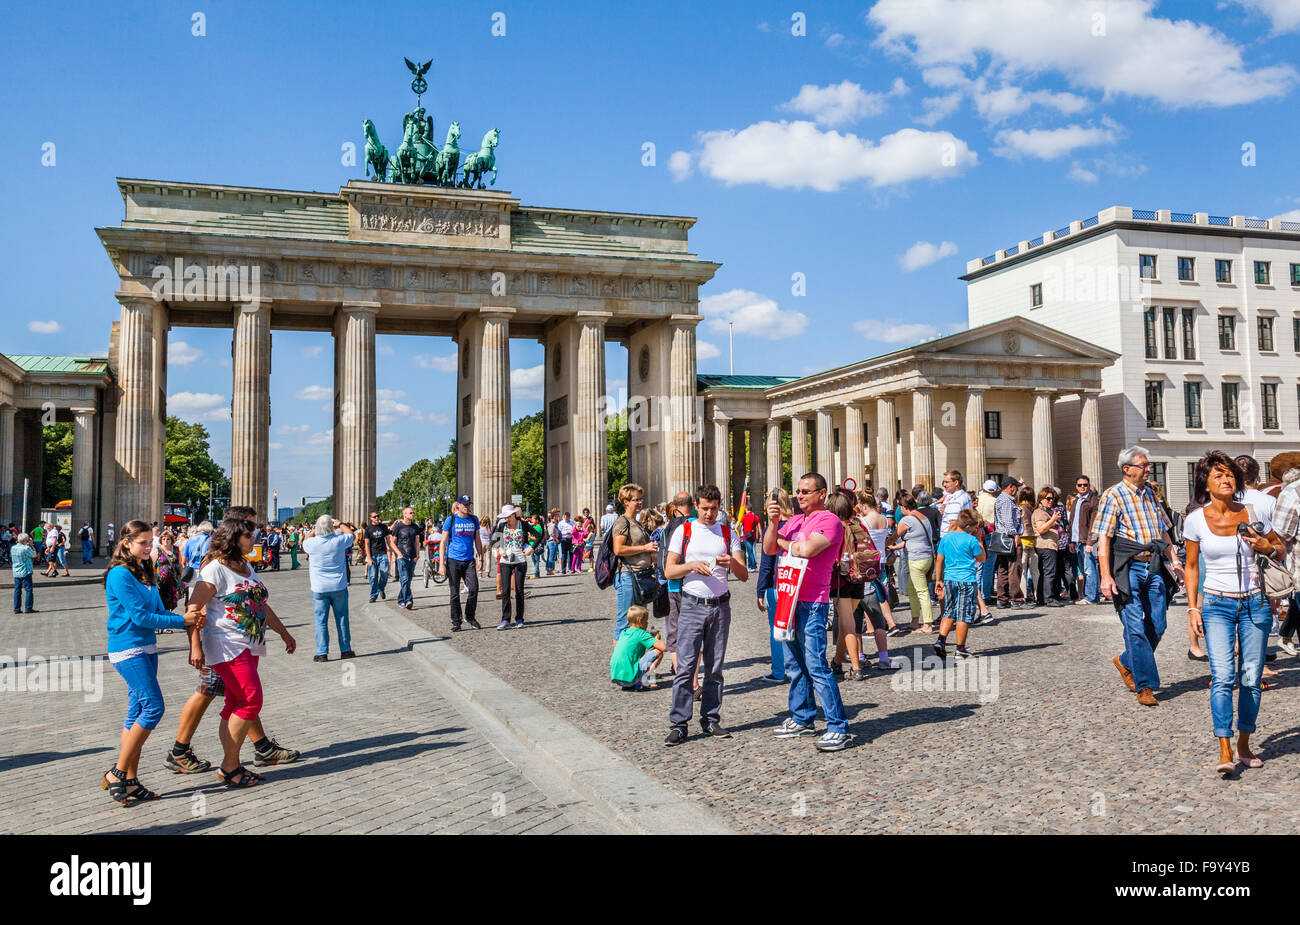 Germania Berlino Mitte, visitatore folle a Pariser Platz, la Porta di Brandeburgo Foto Stock